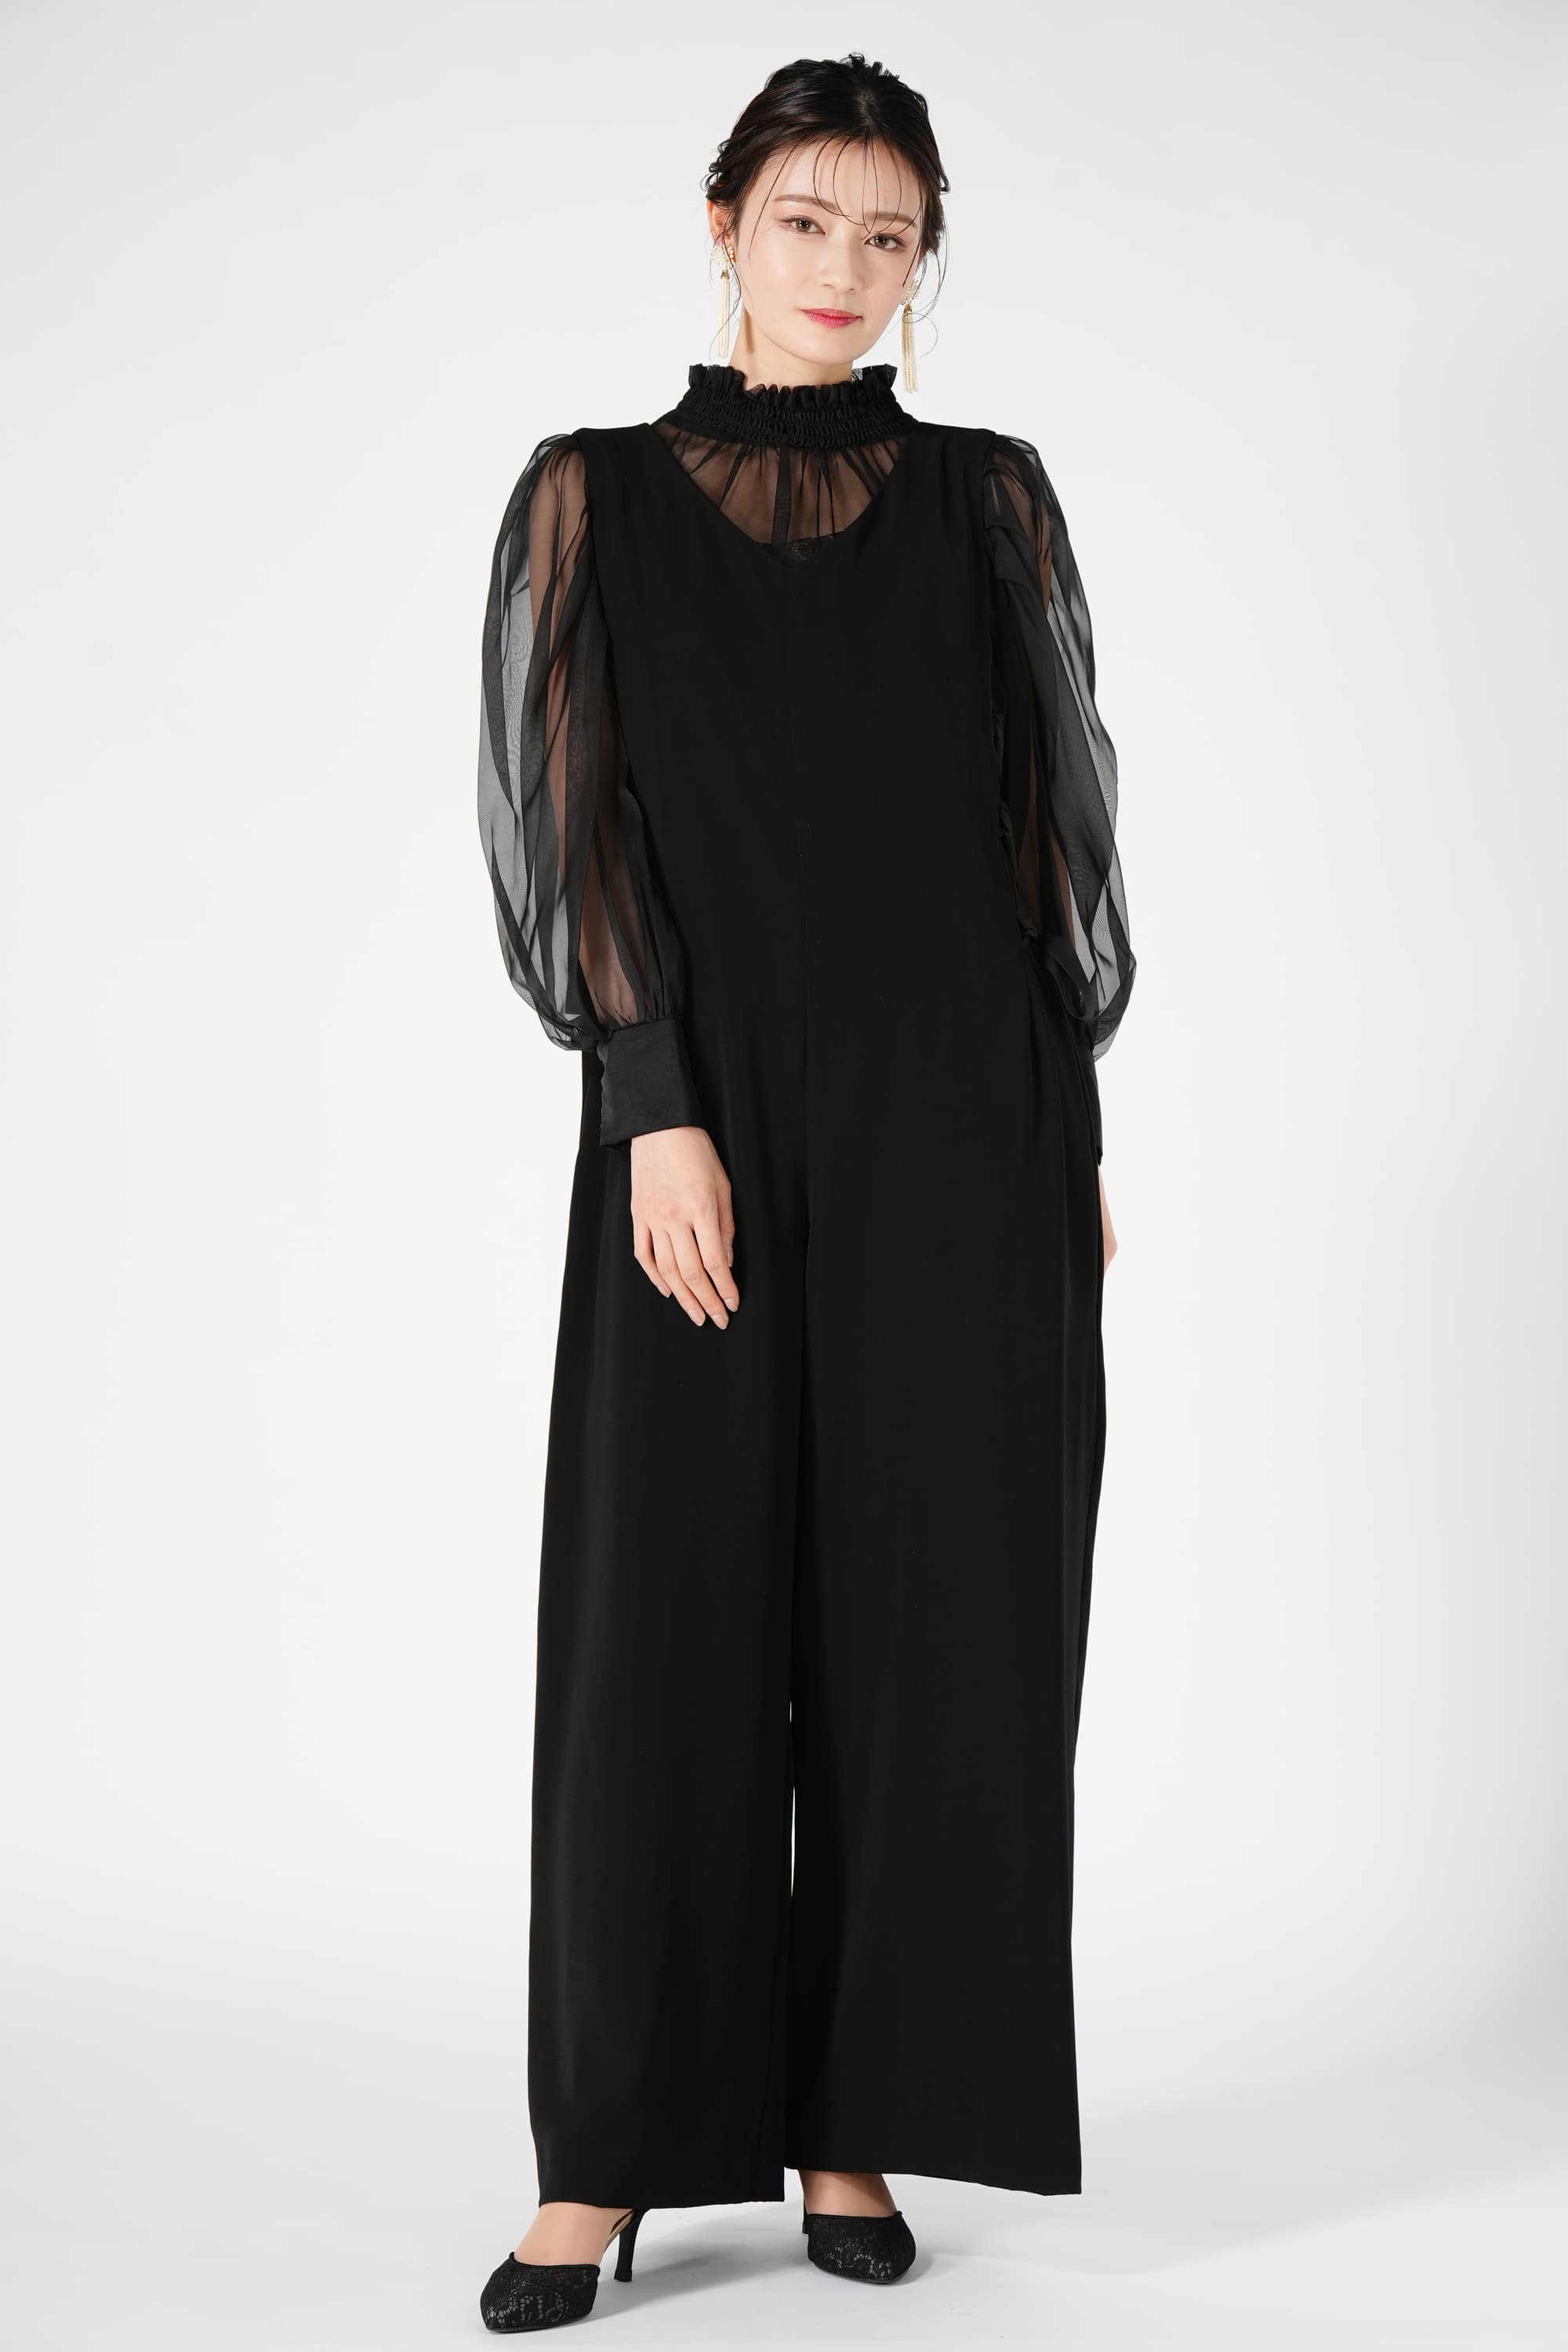 LAGUNAMOON サイドリボン編み上げブラックパンツドレス (M) をレンタル 